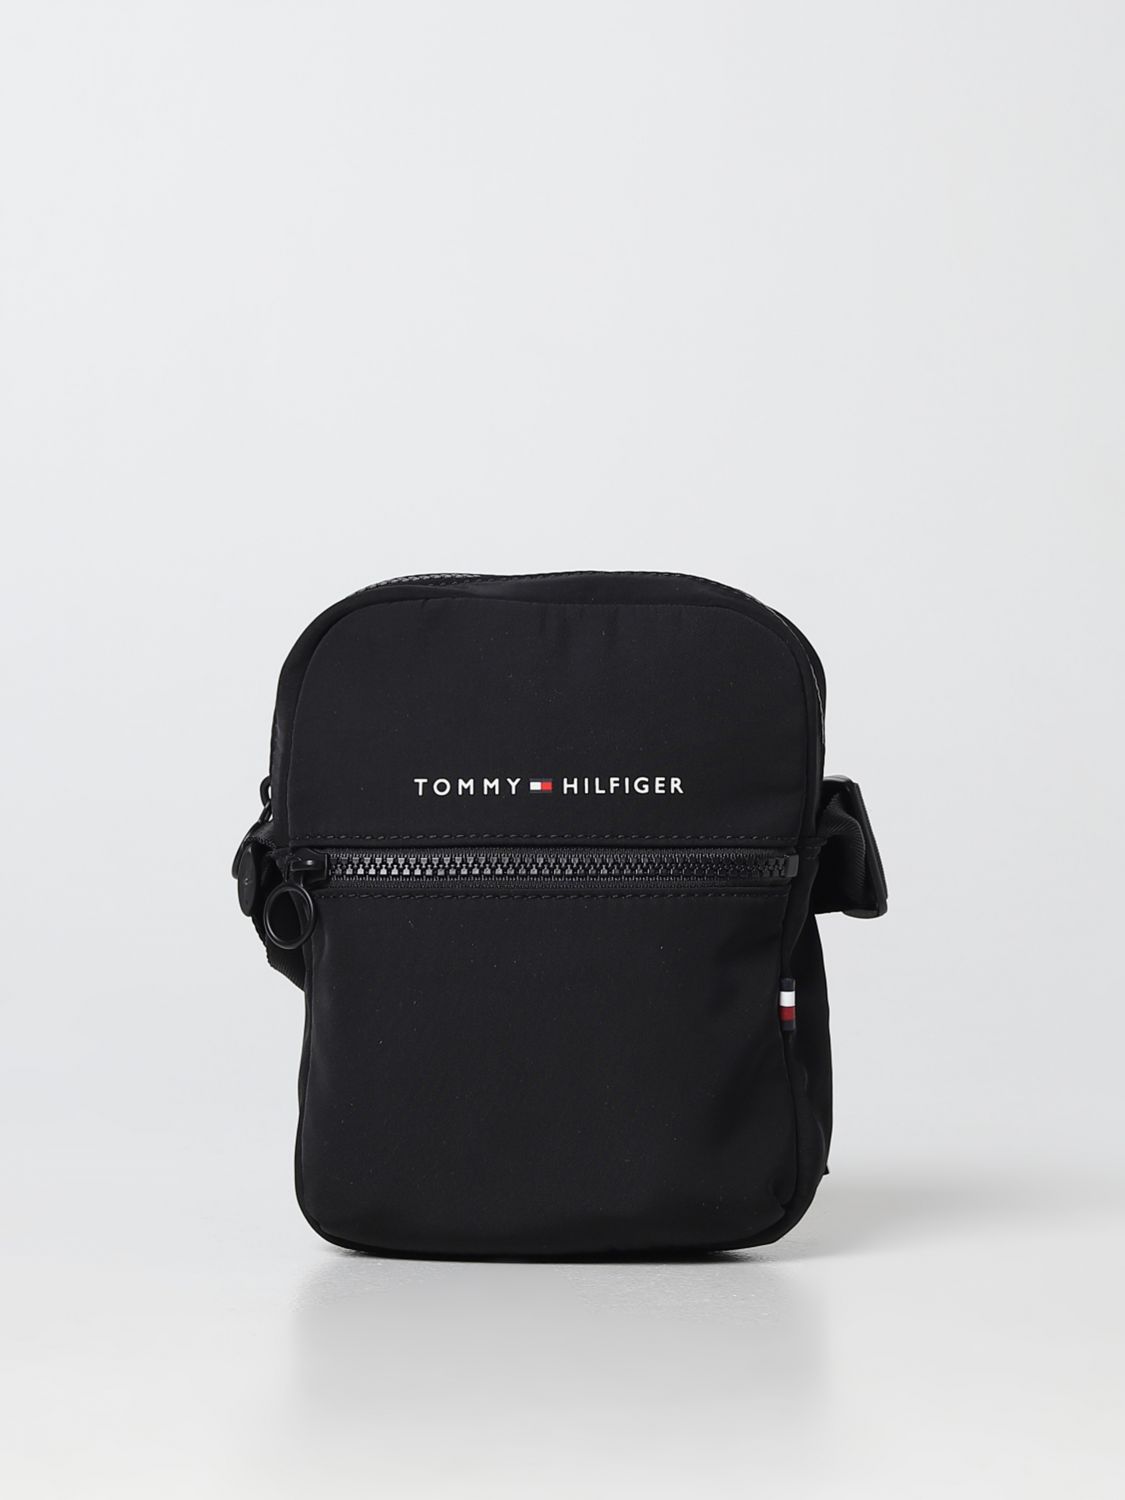 TOMMY HILFIGER: shoulder bag for man Black | Tommy Hilfiger shoulder bag AM0AM10550 online on GIGLIO.COM